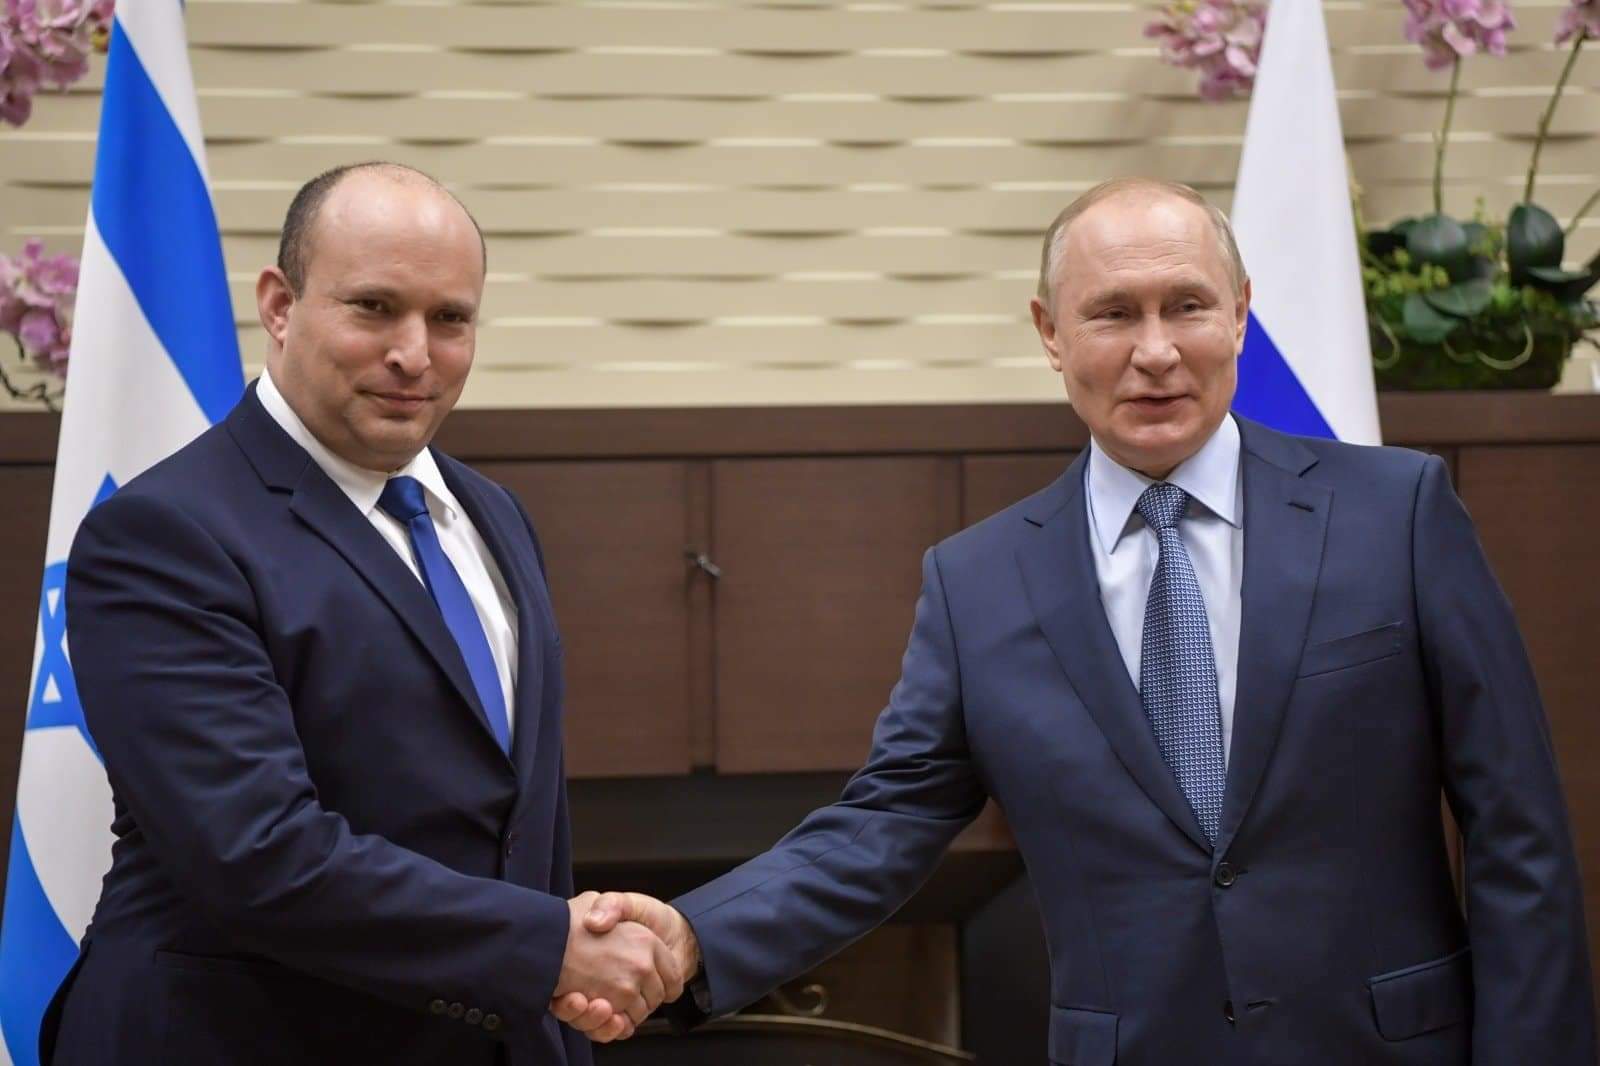 شاهد.. بوتين لبينيت: لدى روسيا وإسرائيل خلافات عديدة بشأن سوريا لكن هناك نقاط تماس أيضا